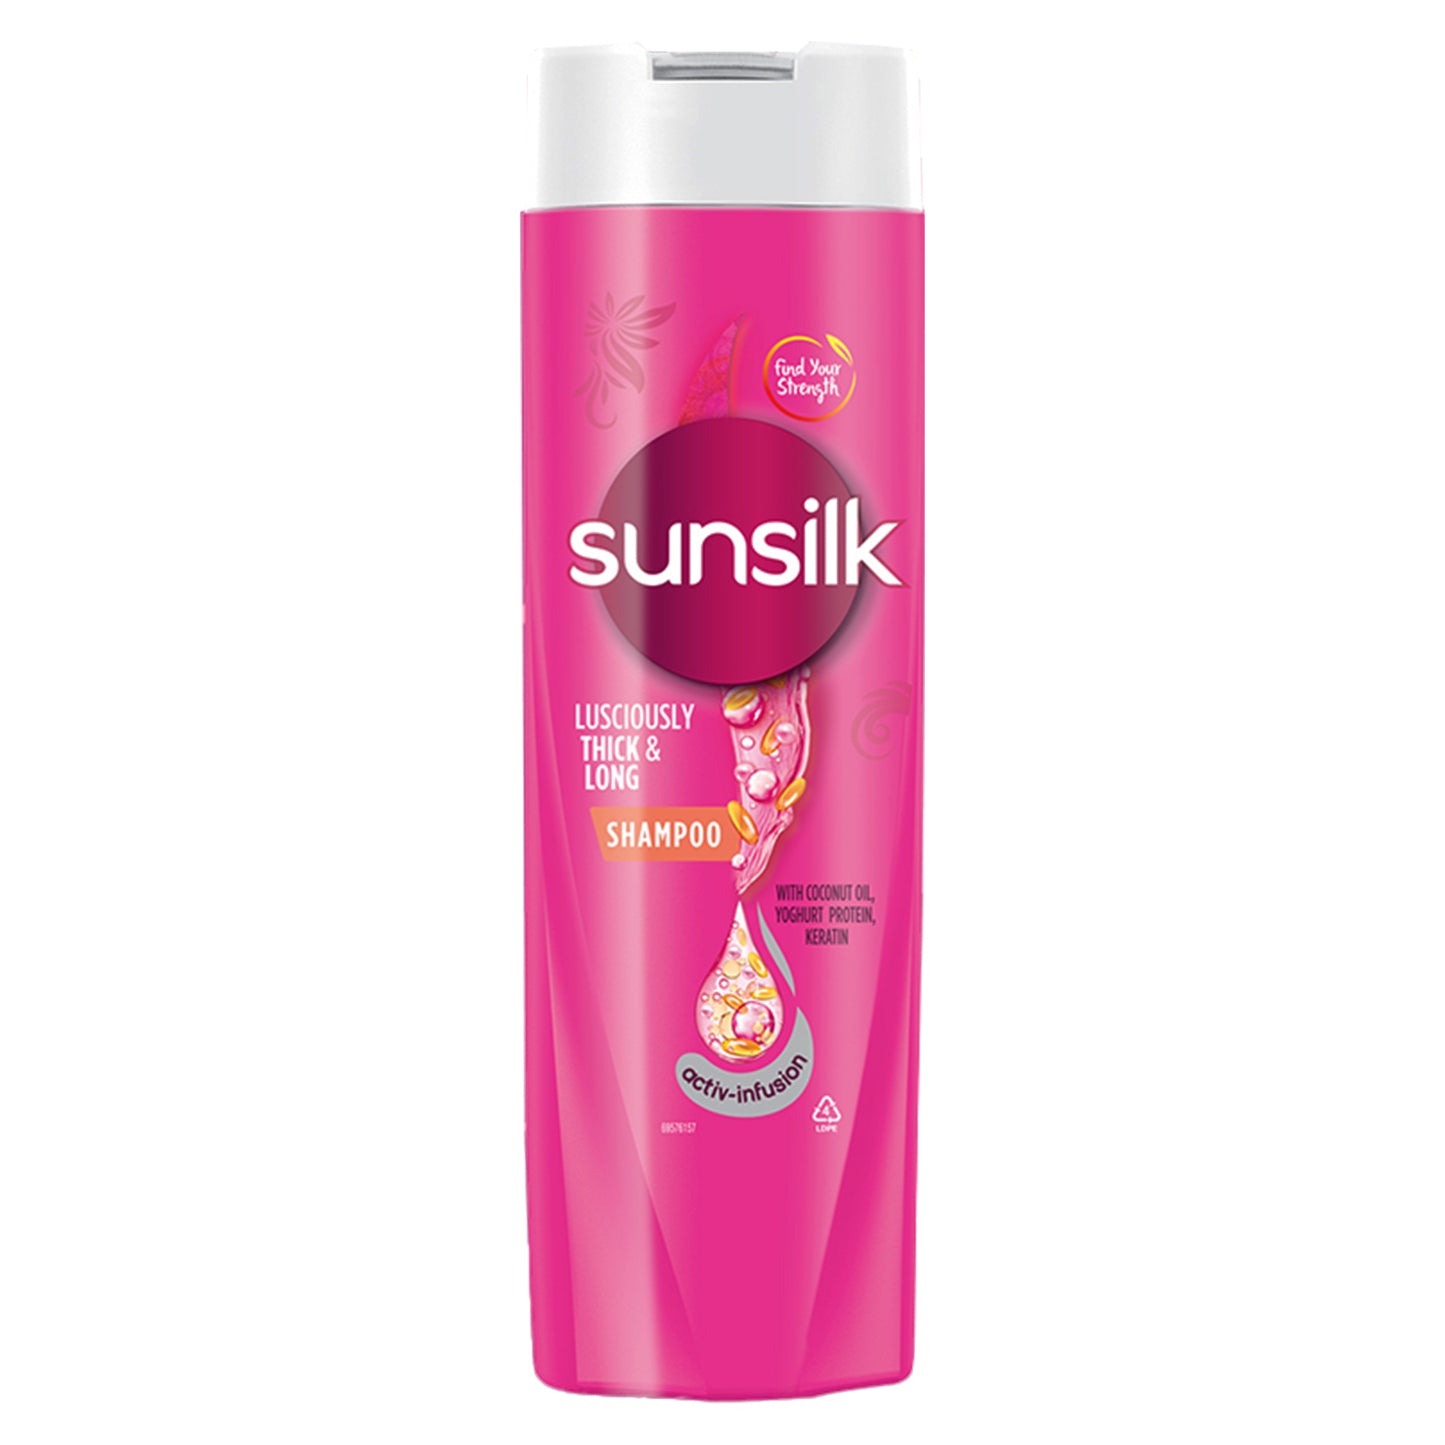 Sunsilk Kalın ve Uzun Şampuan (180ml)